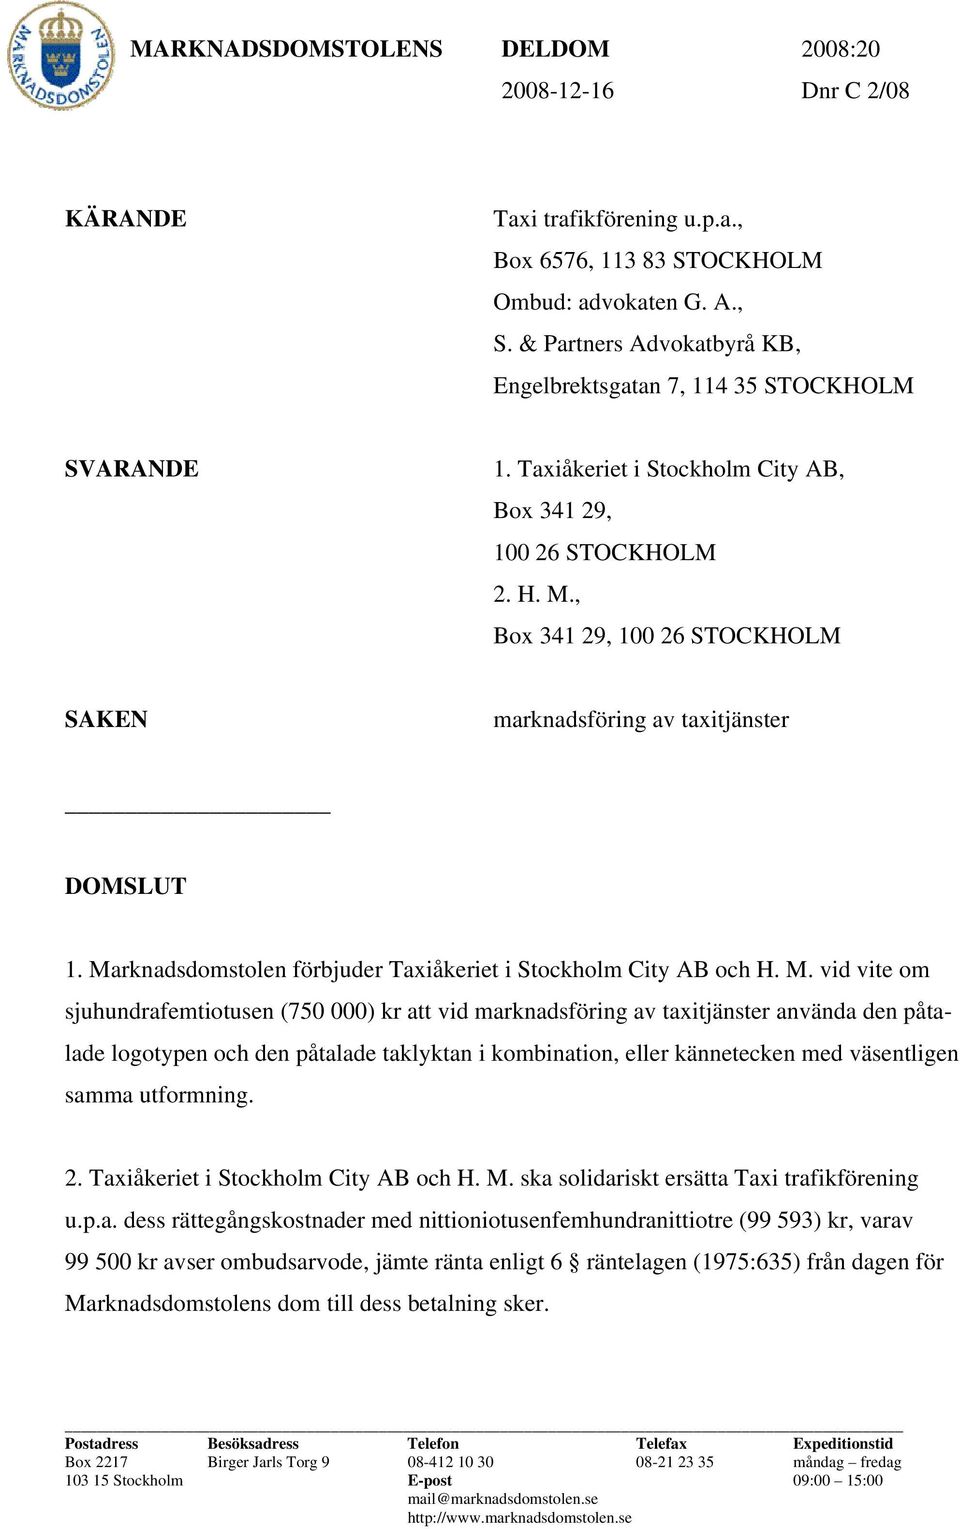 , Box 341 29, 100 26 STOCKHOLM SAKEN marknadsföring av taxitjänster DOMSLUT 1. Ma